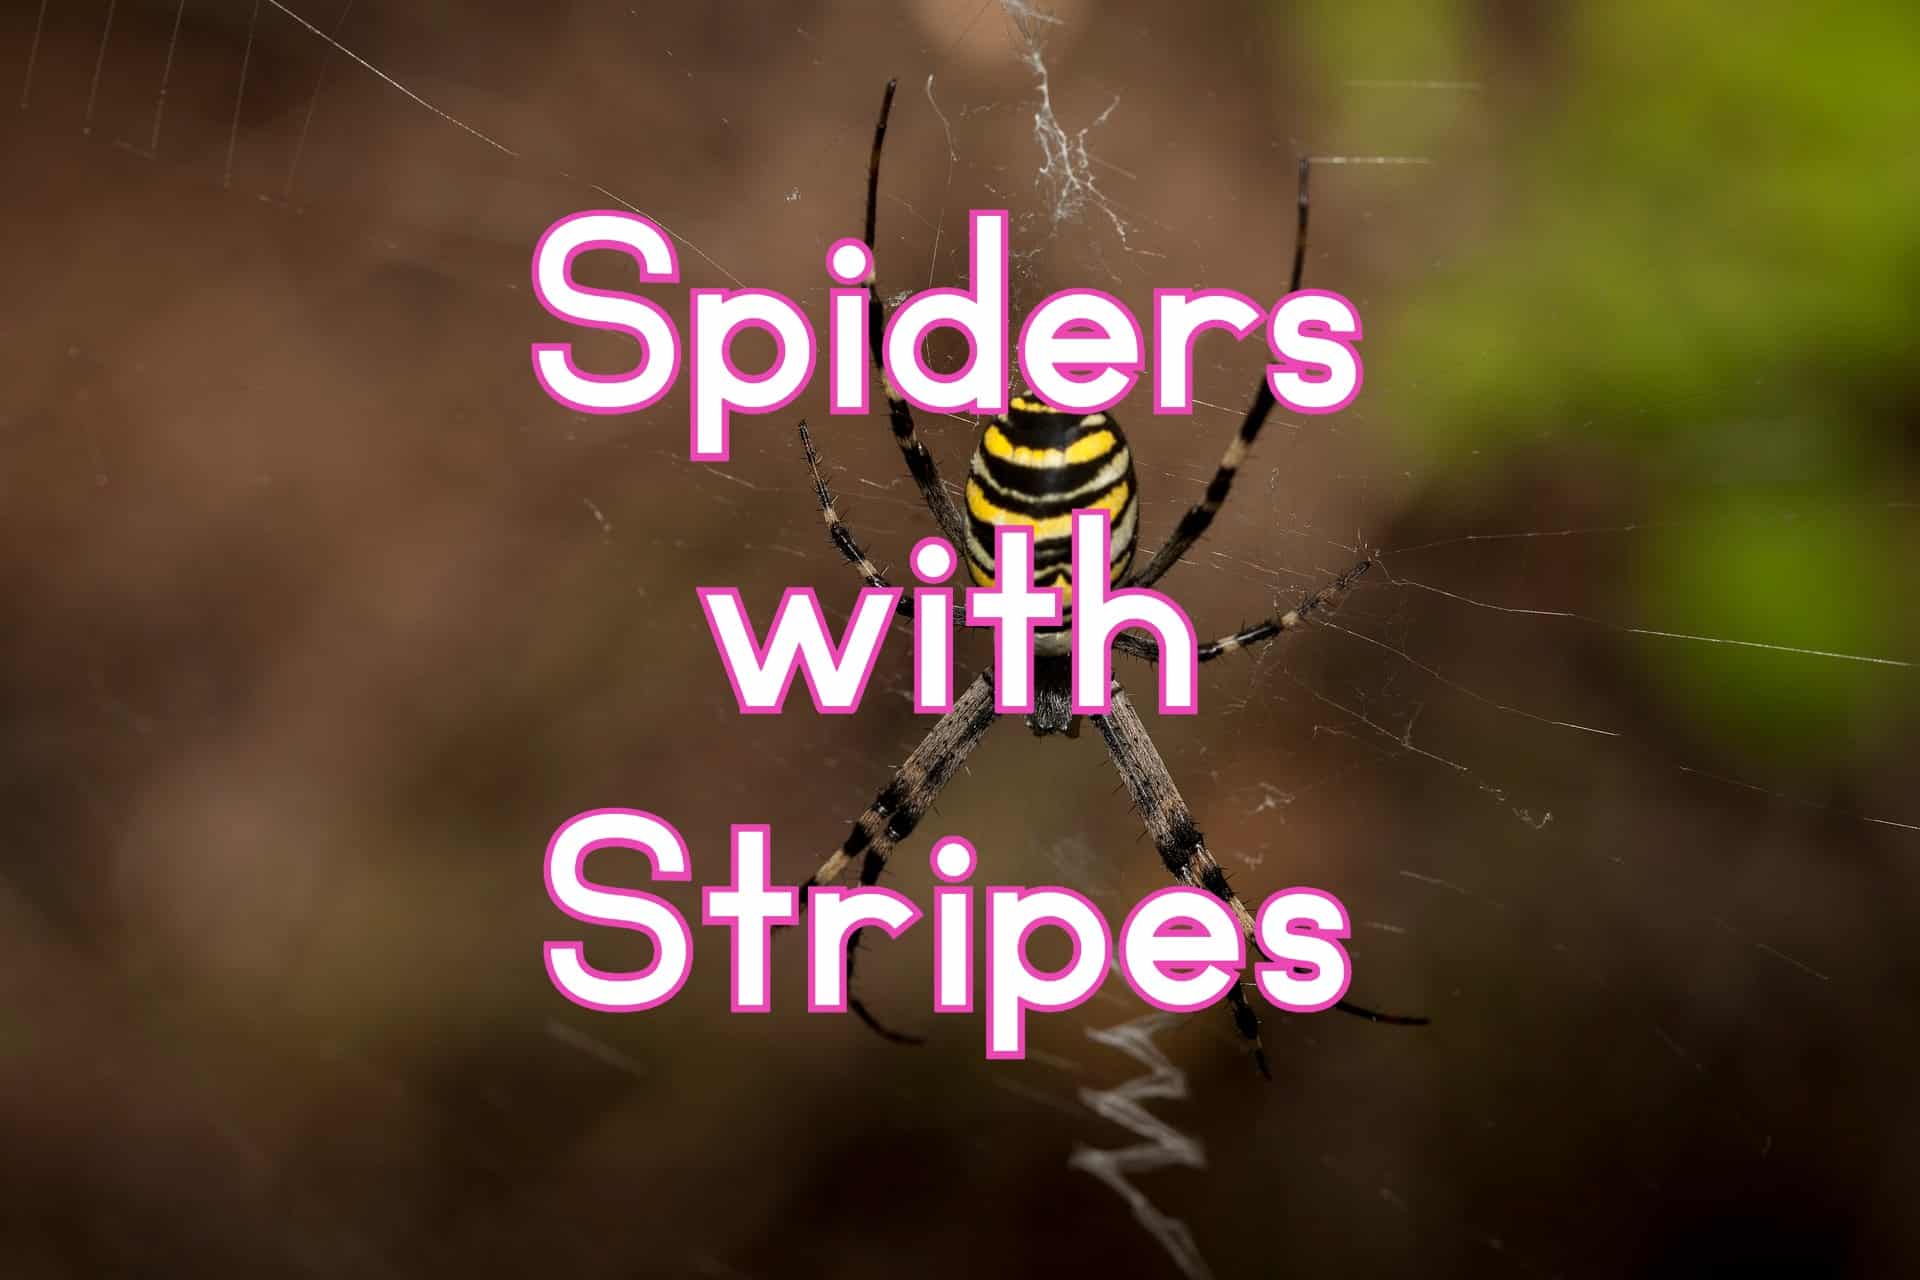 Black and White Striped Spider - Cesonia bilineata 